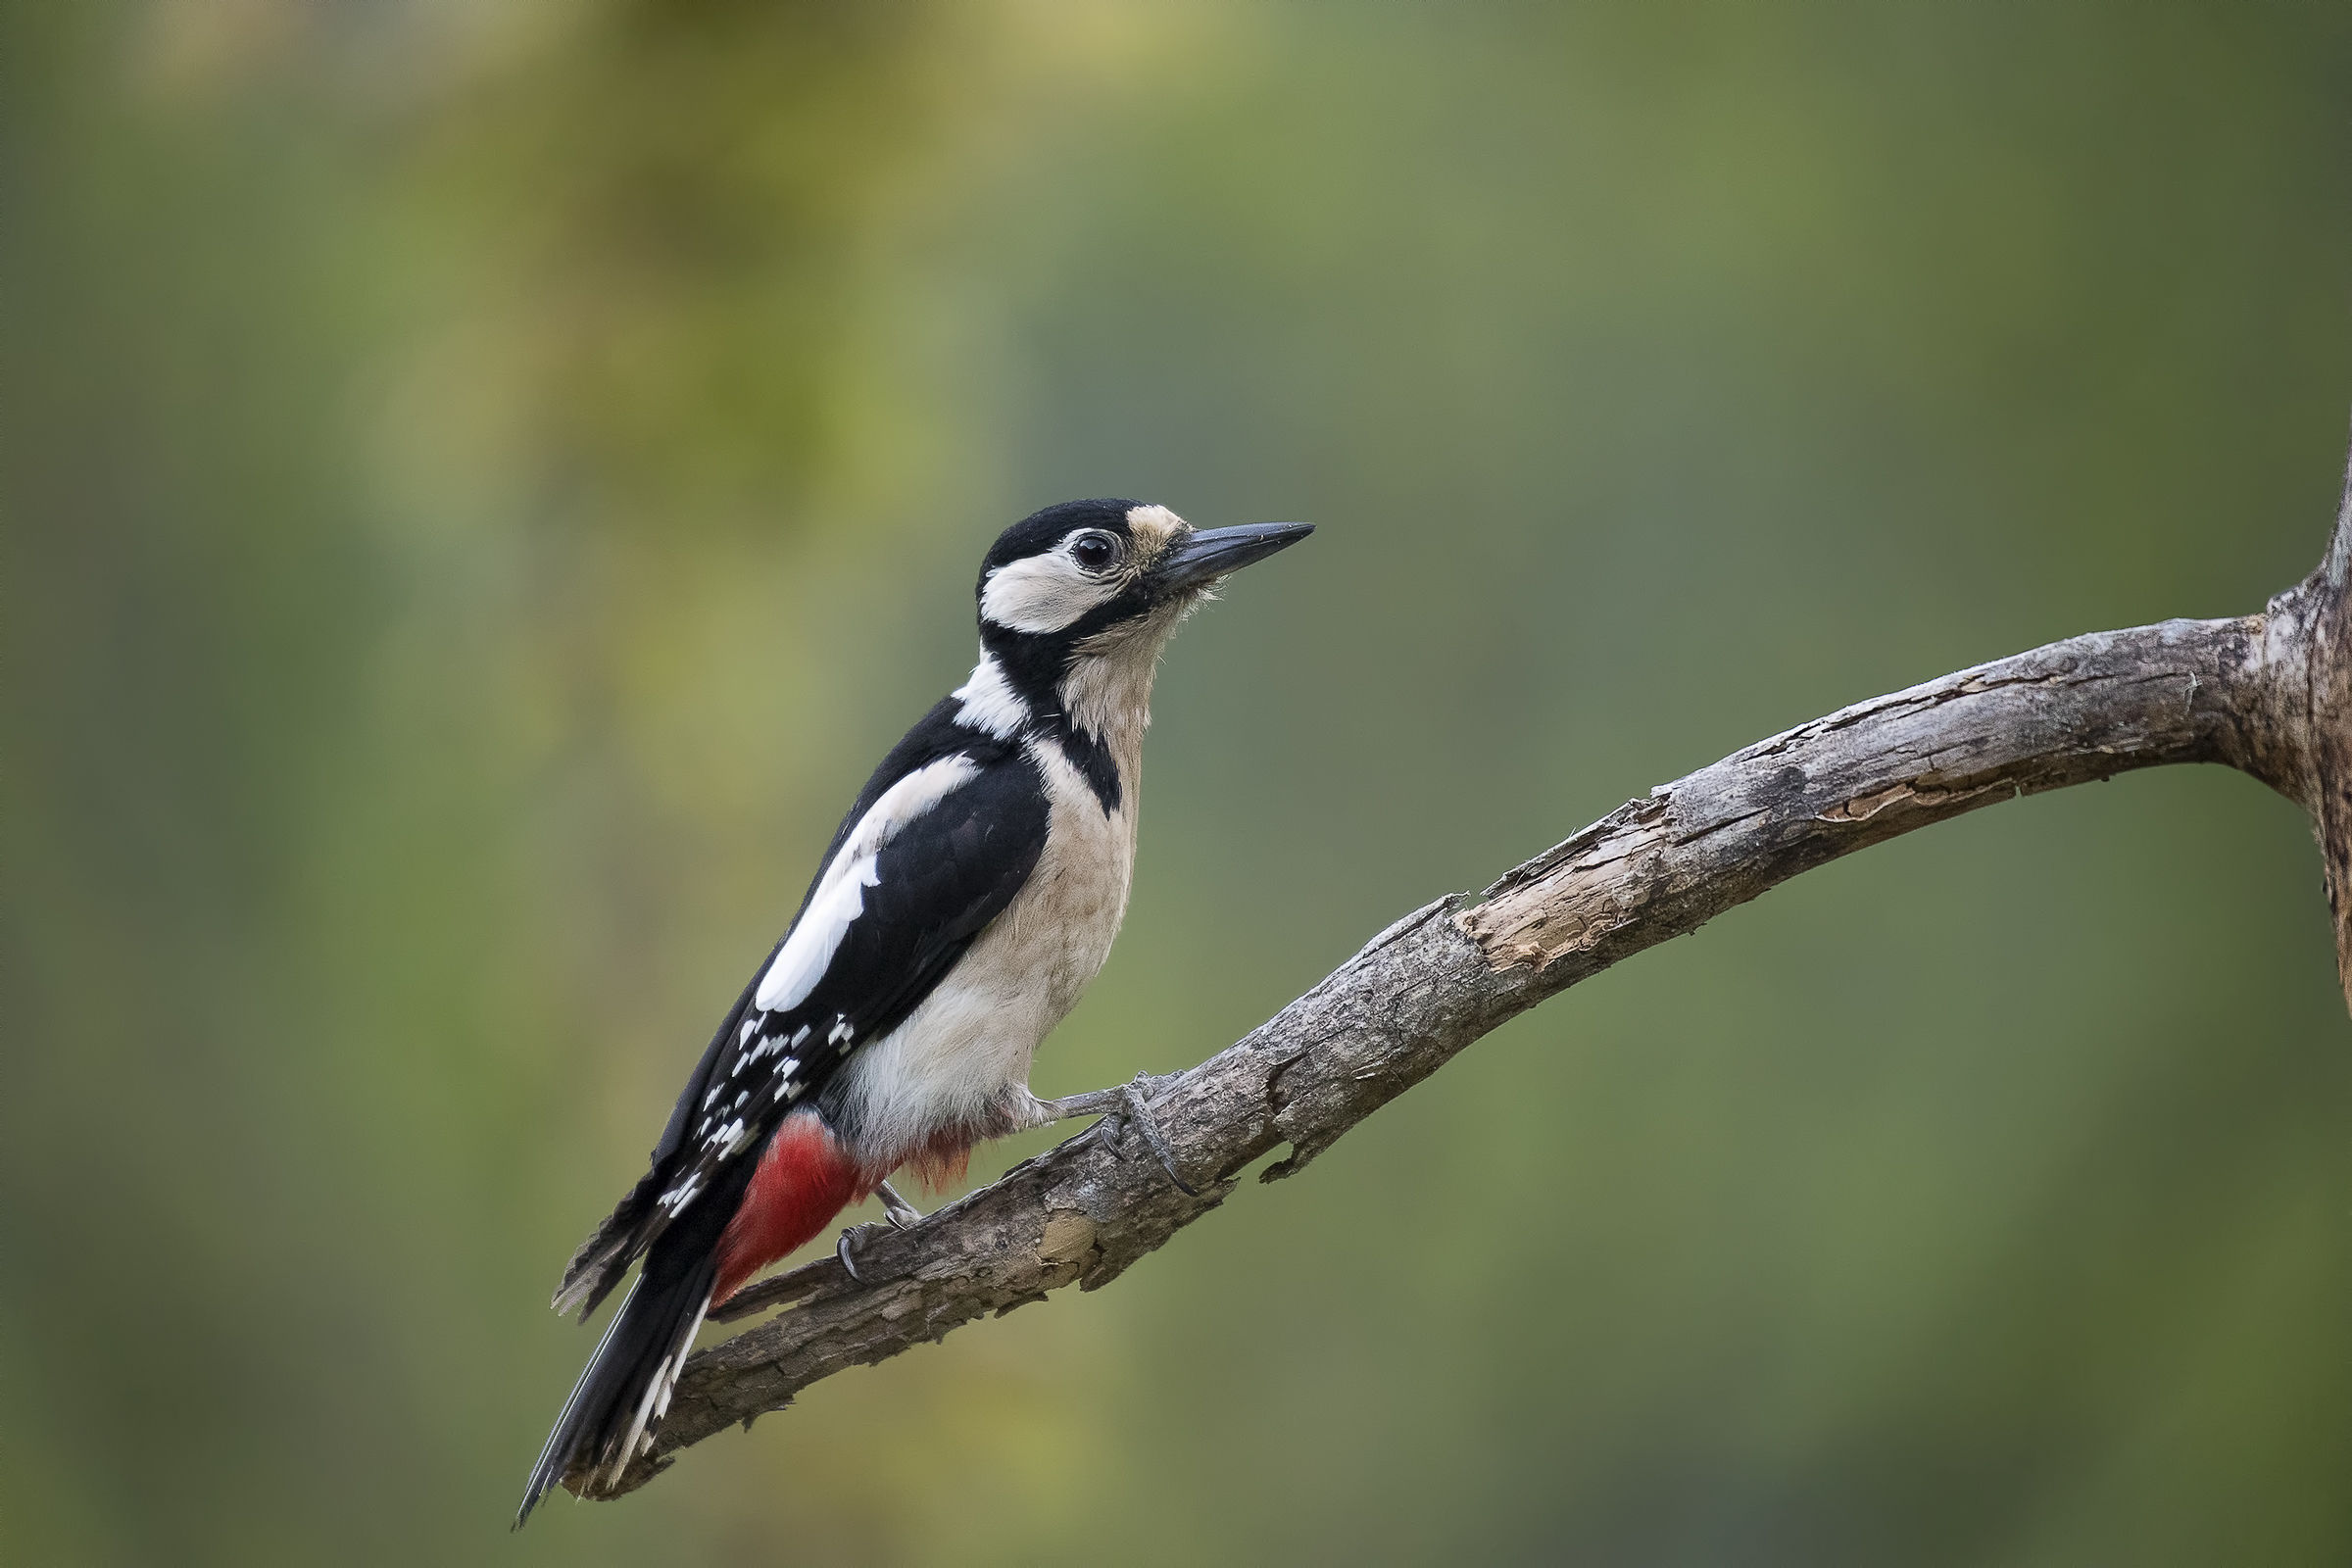 great female woodpecker!...